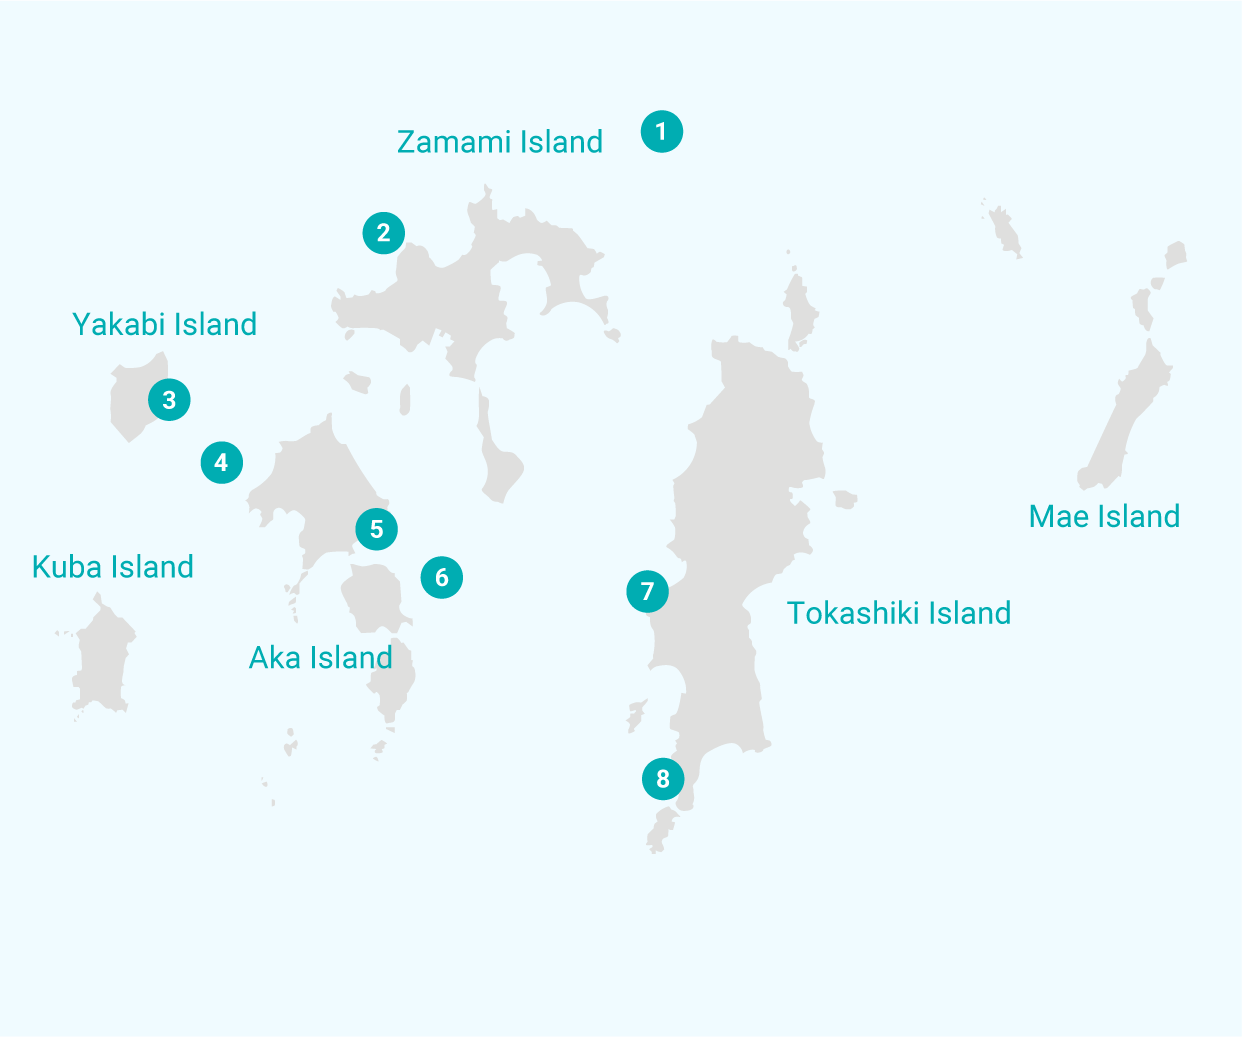 kerama islands diving map